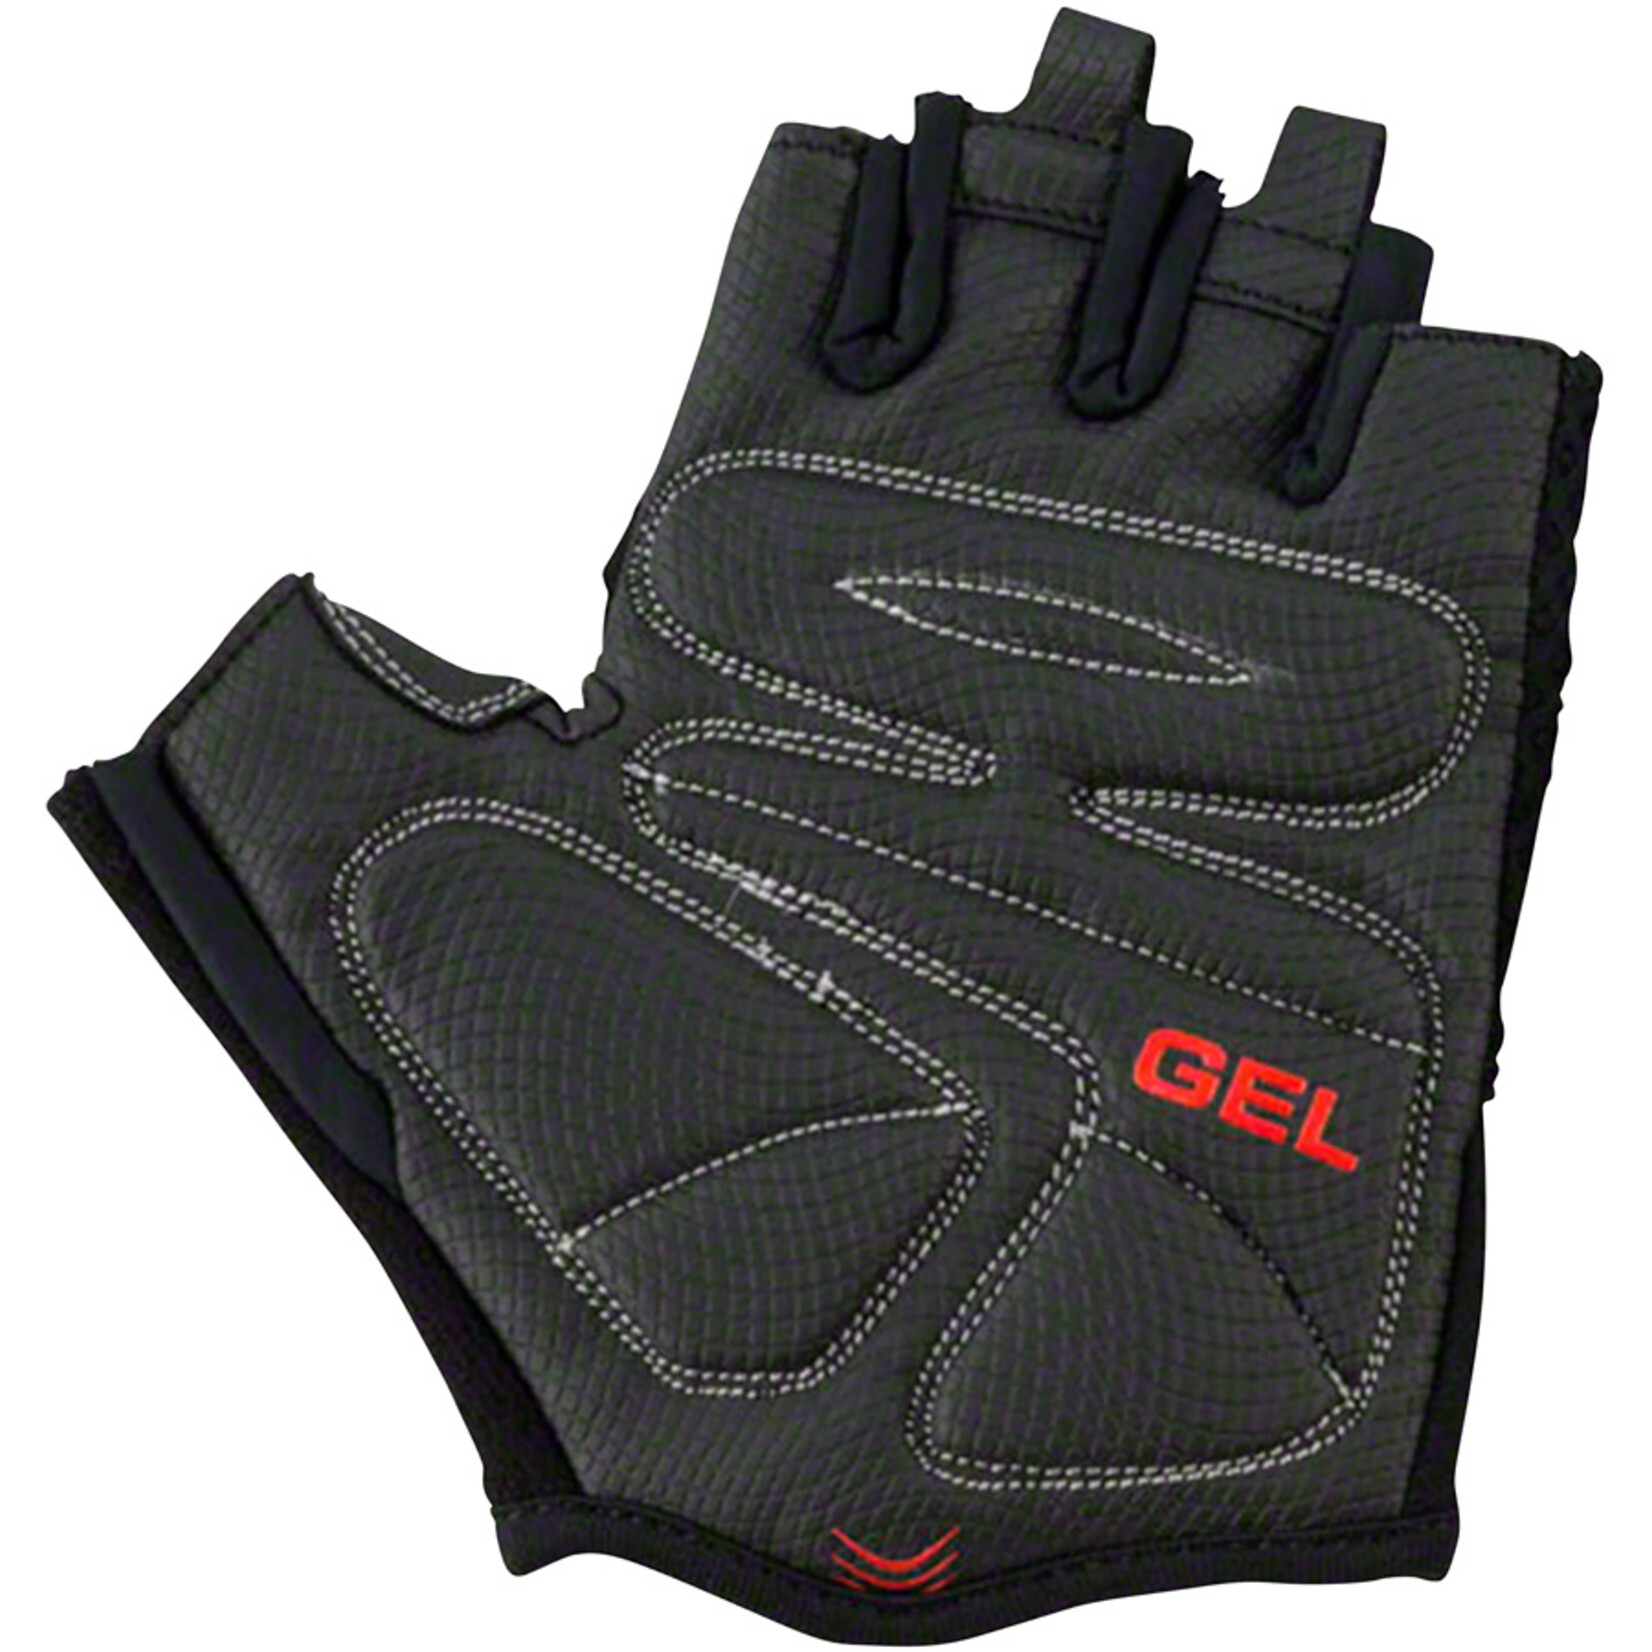 Bellwether Bellwether Gel Supreme Gloves - Black, Short Finger, Men's, X-Large